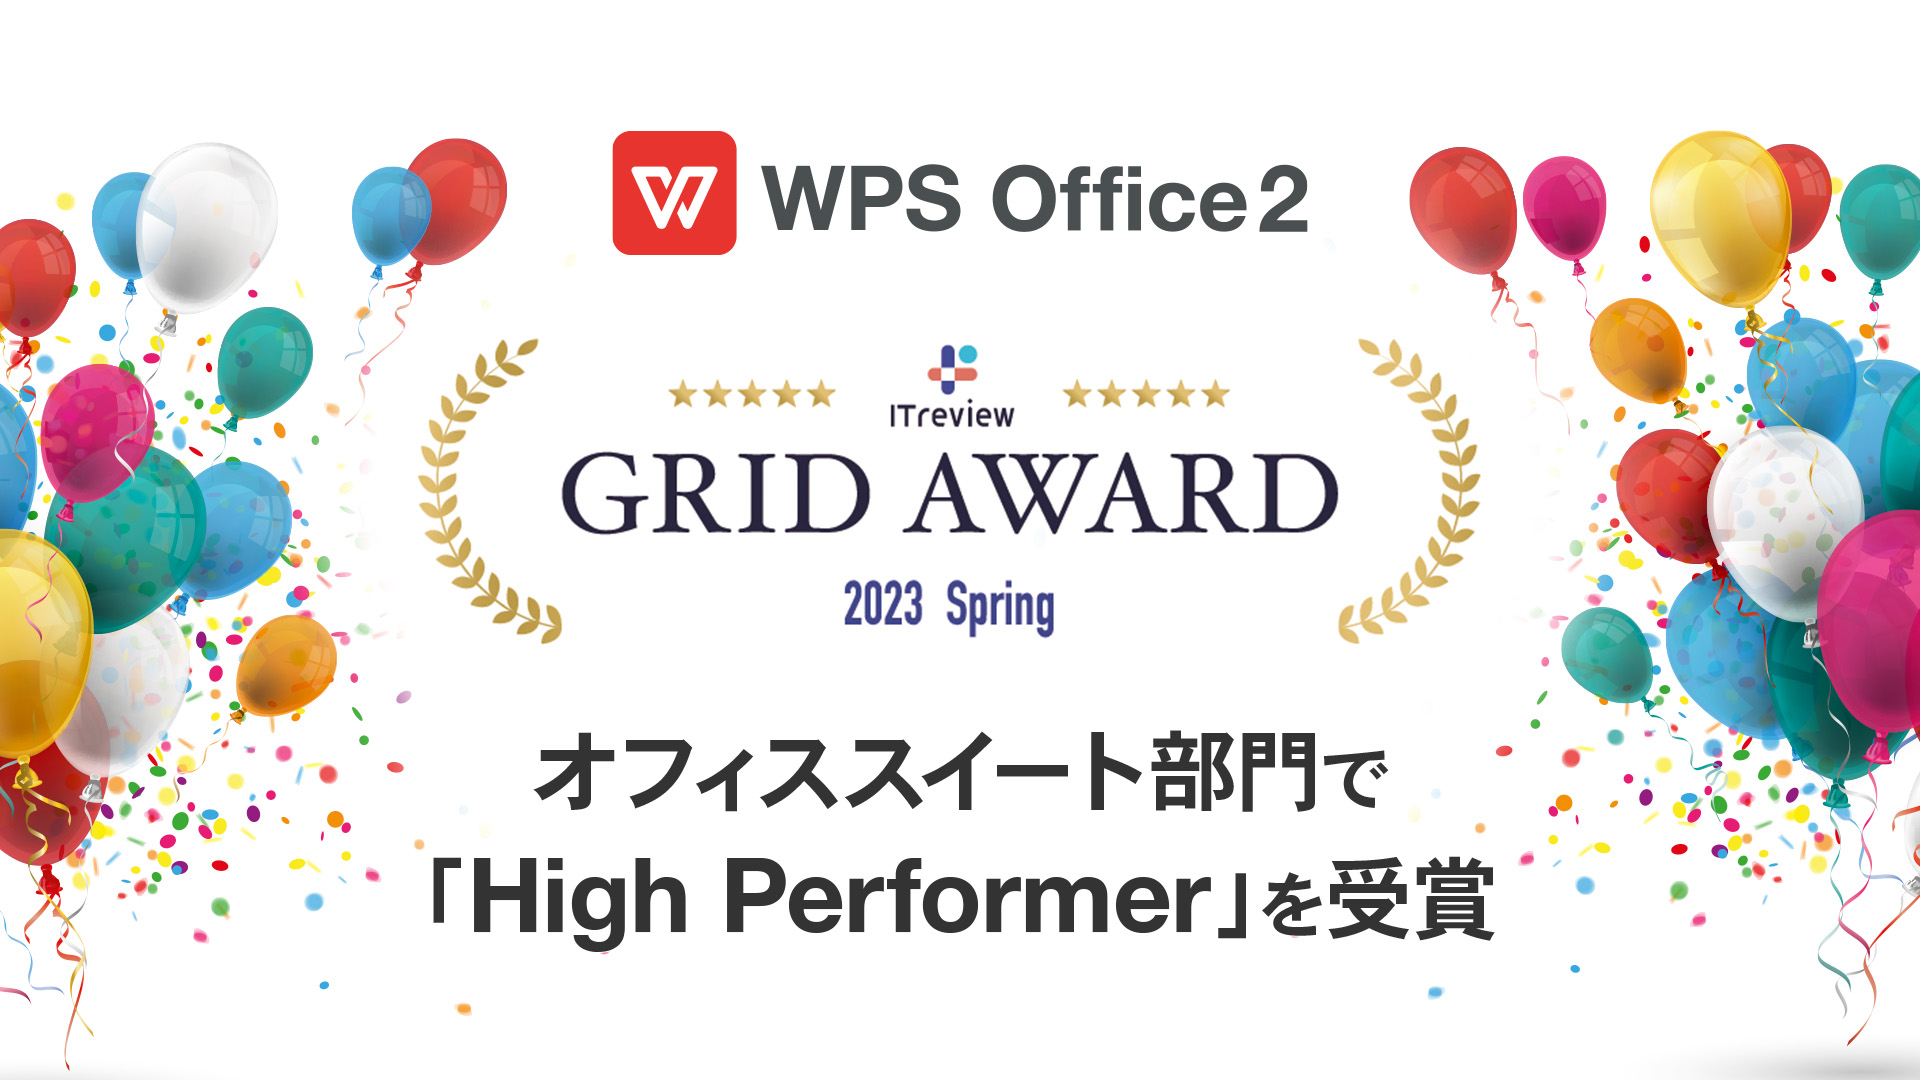 WPS Office、「ITreview Grid Award 2023 Spring」オフィススイート部門で11期連続